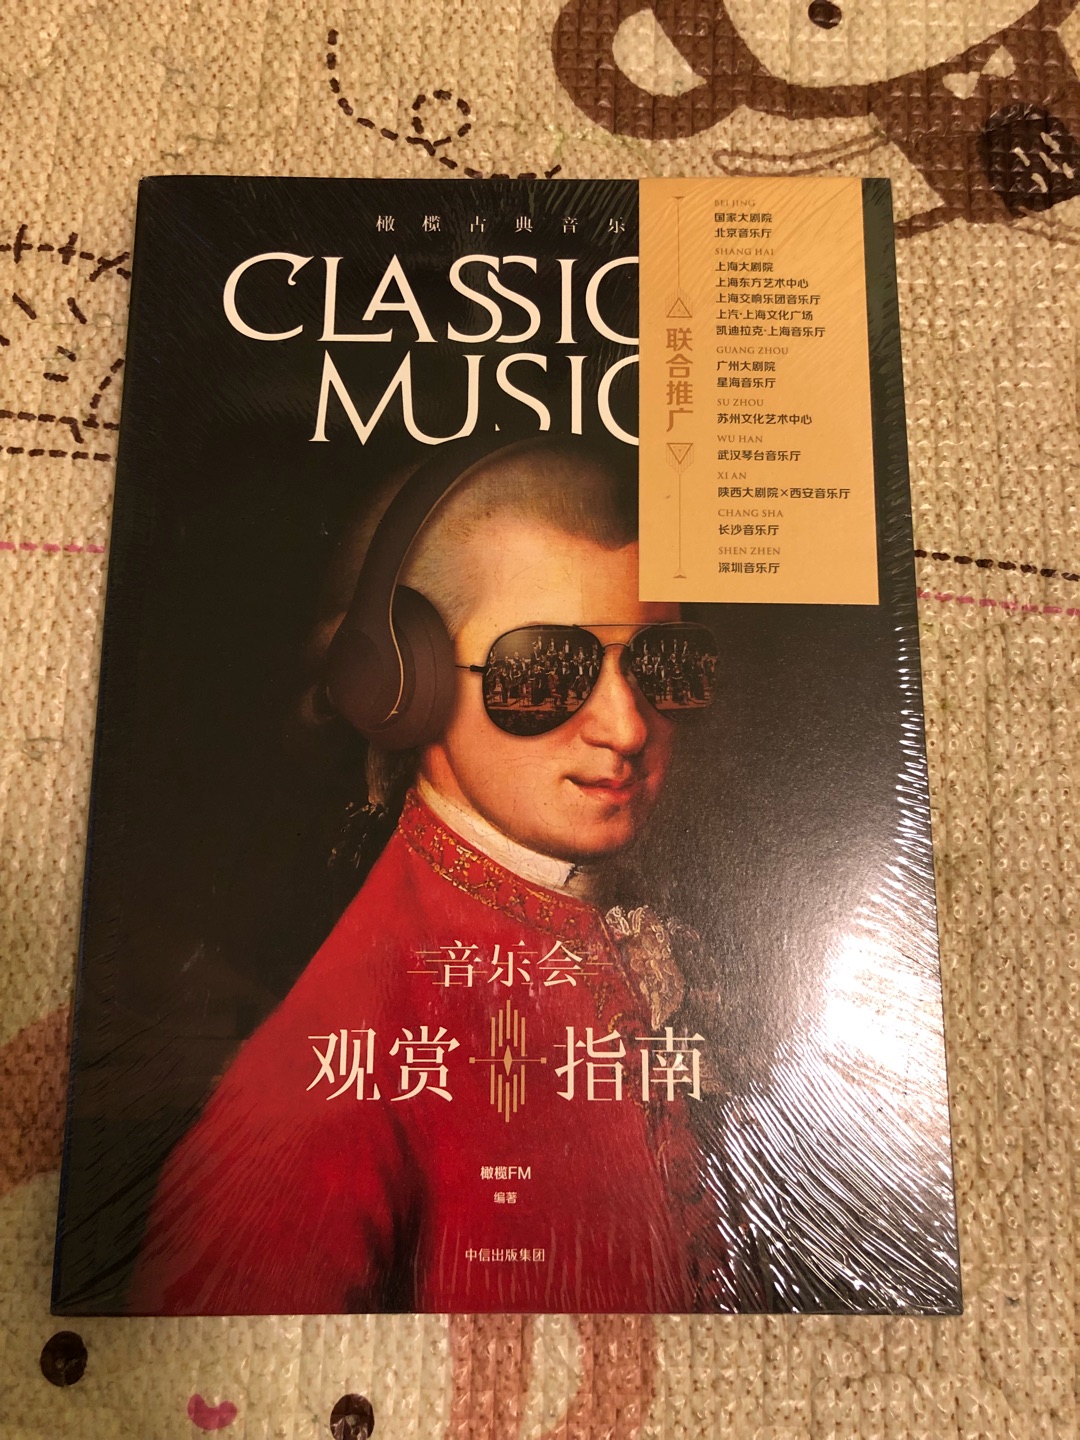 很不错的古典音乐入门书，很系统，内容也很吸引人，印刷精美。